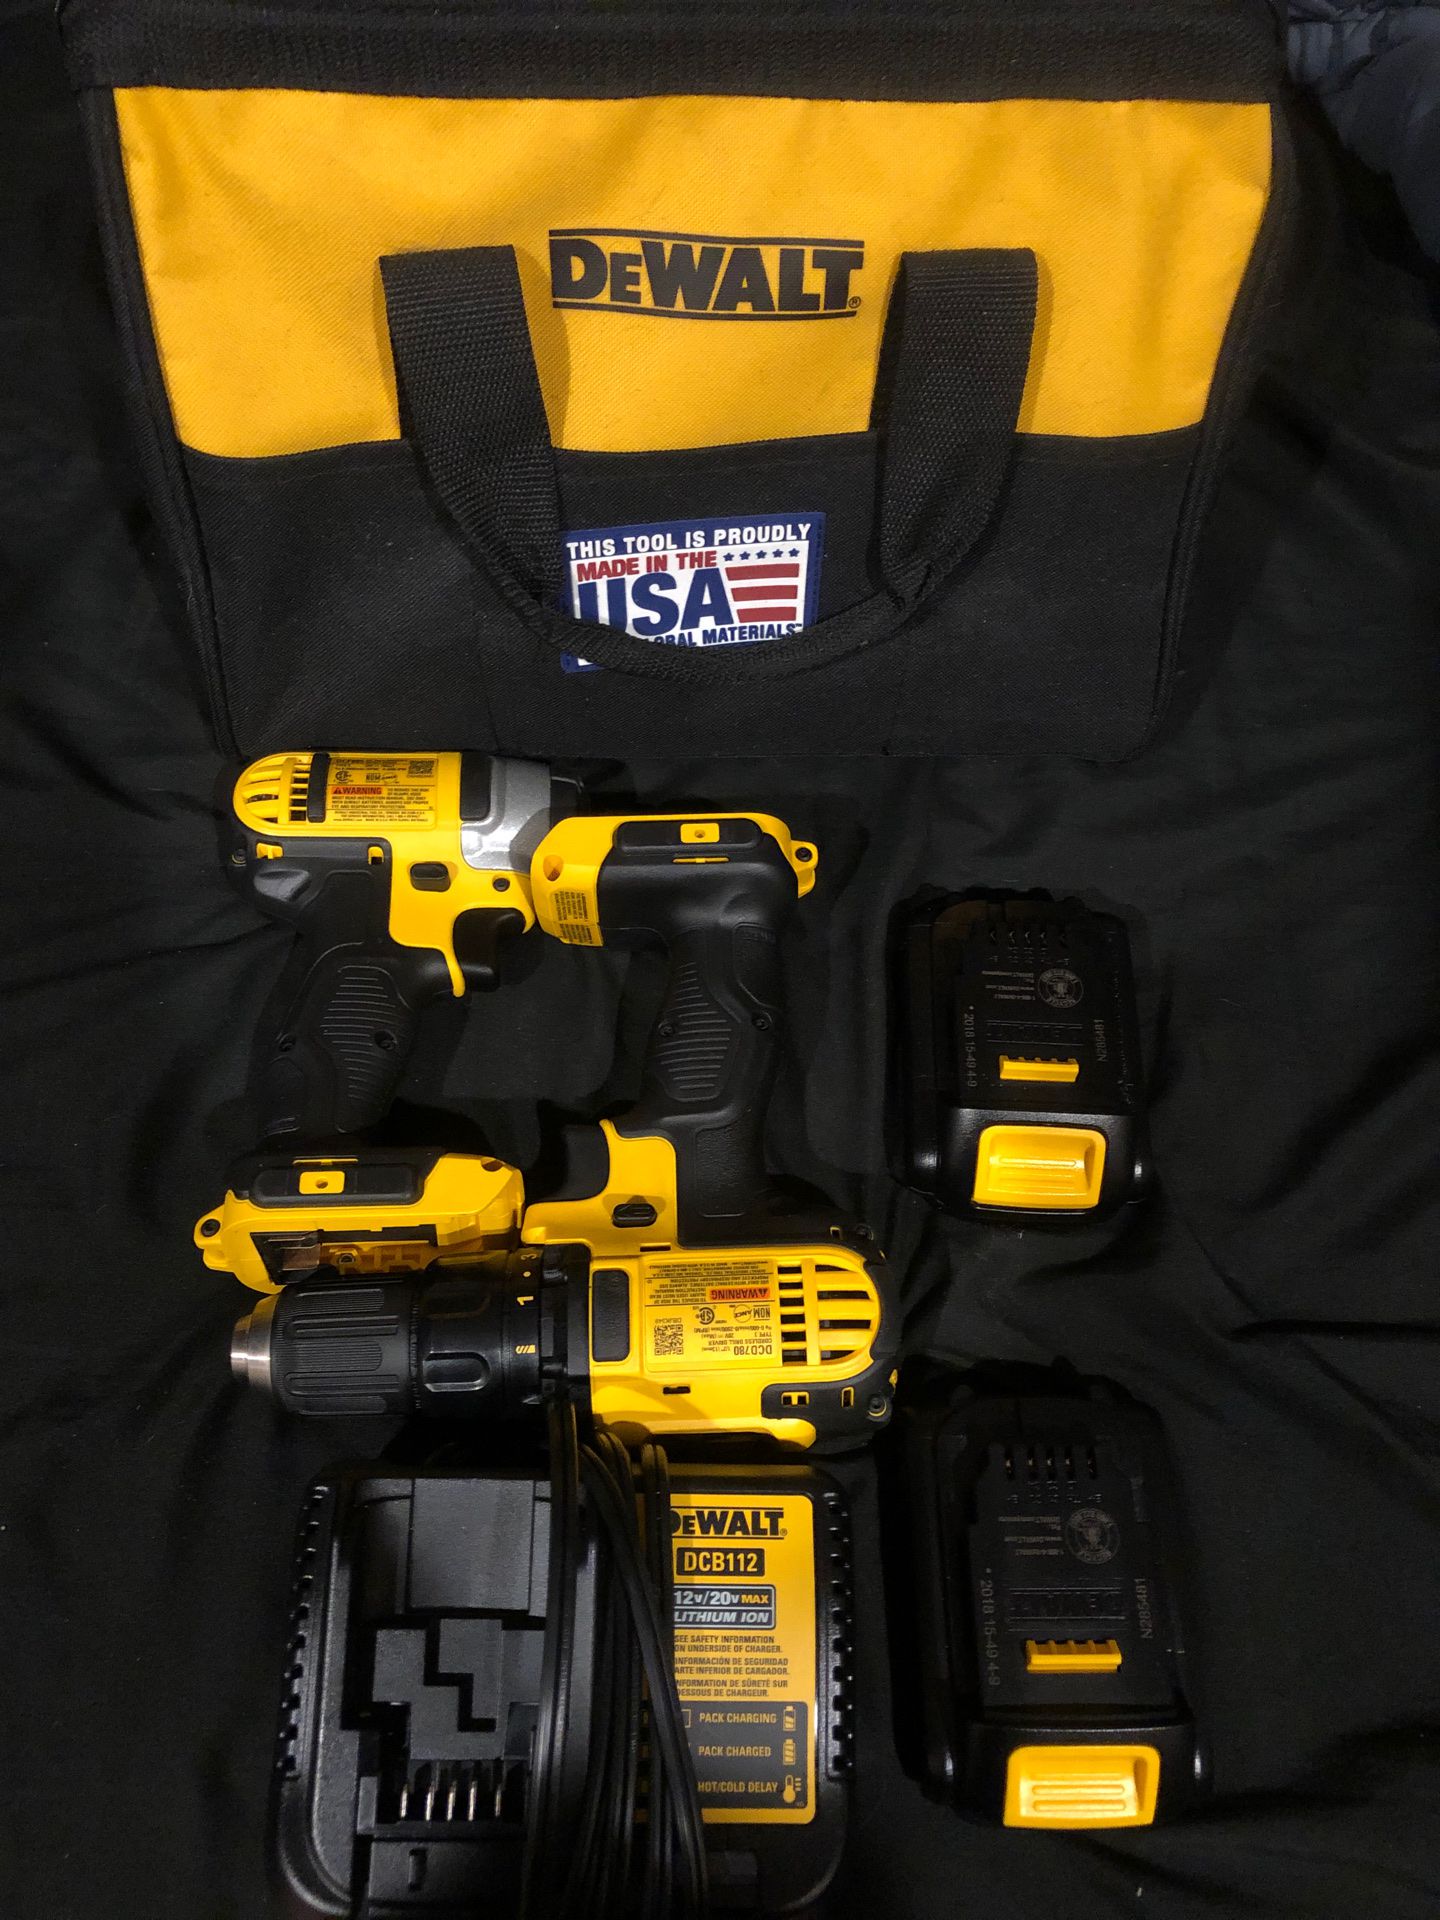 Dewalt impact and drill driver kit